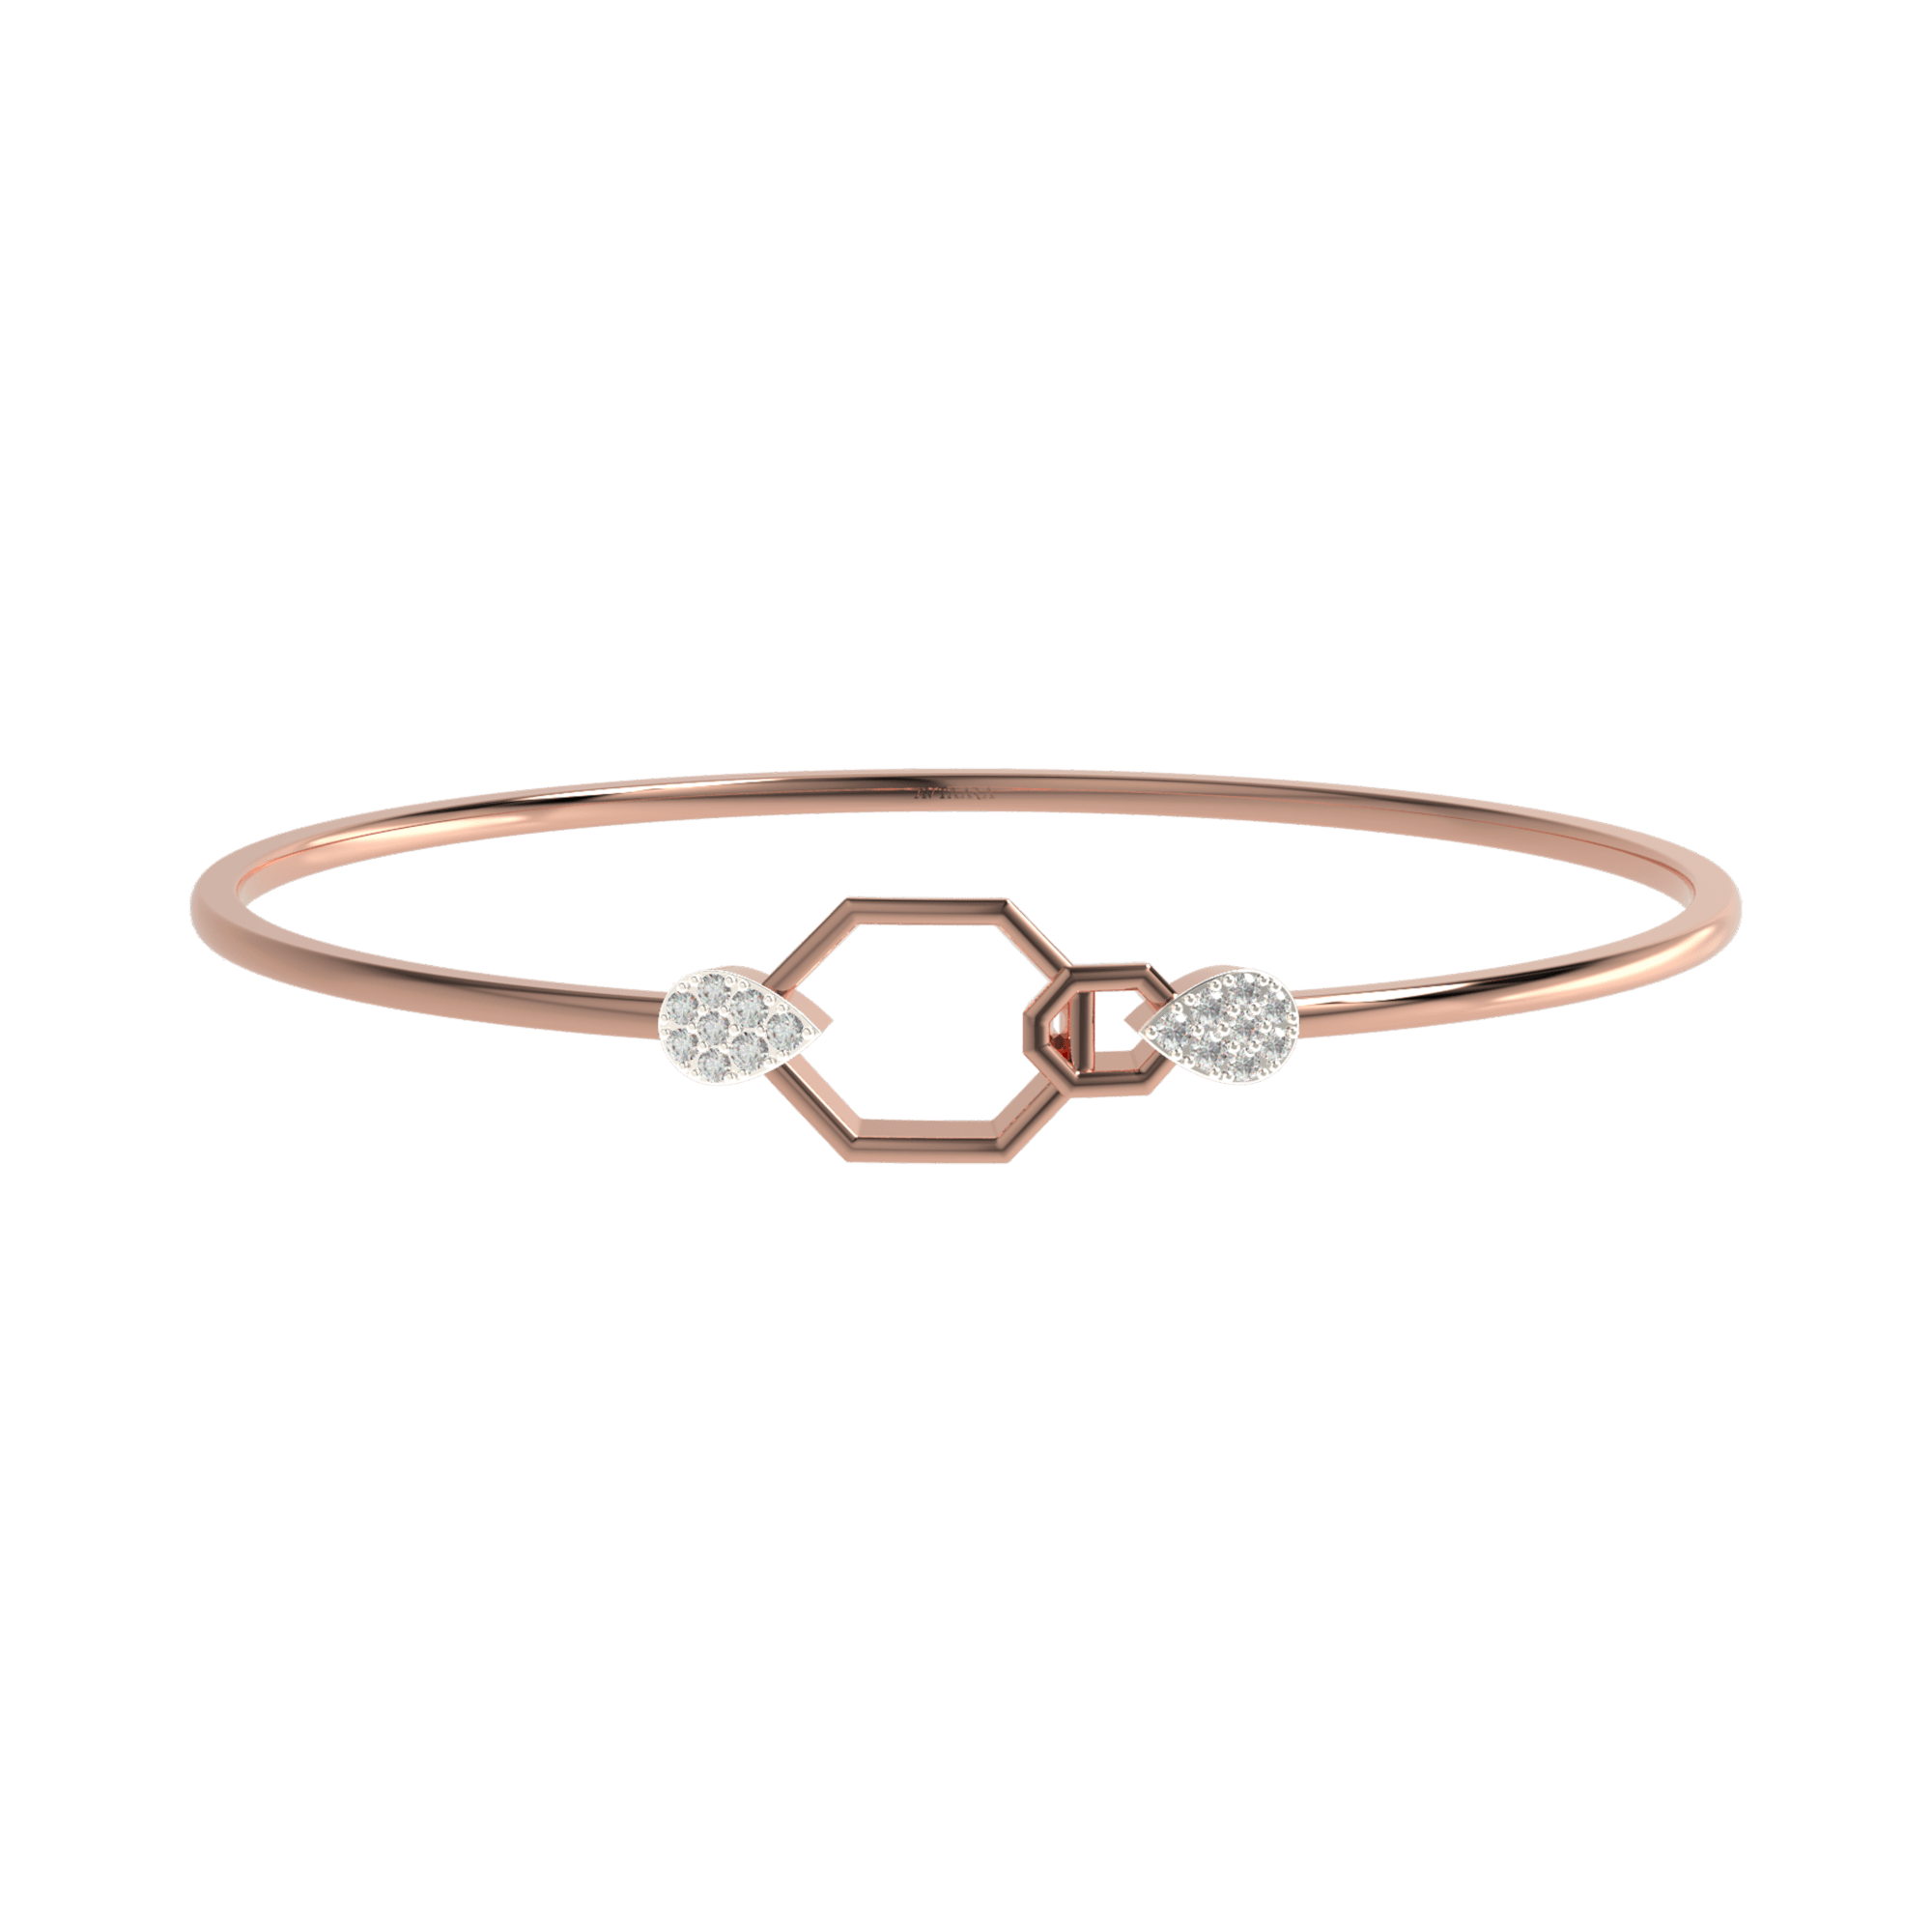 Rose Gold Kada Design | Buy Diamond 